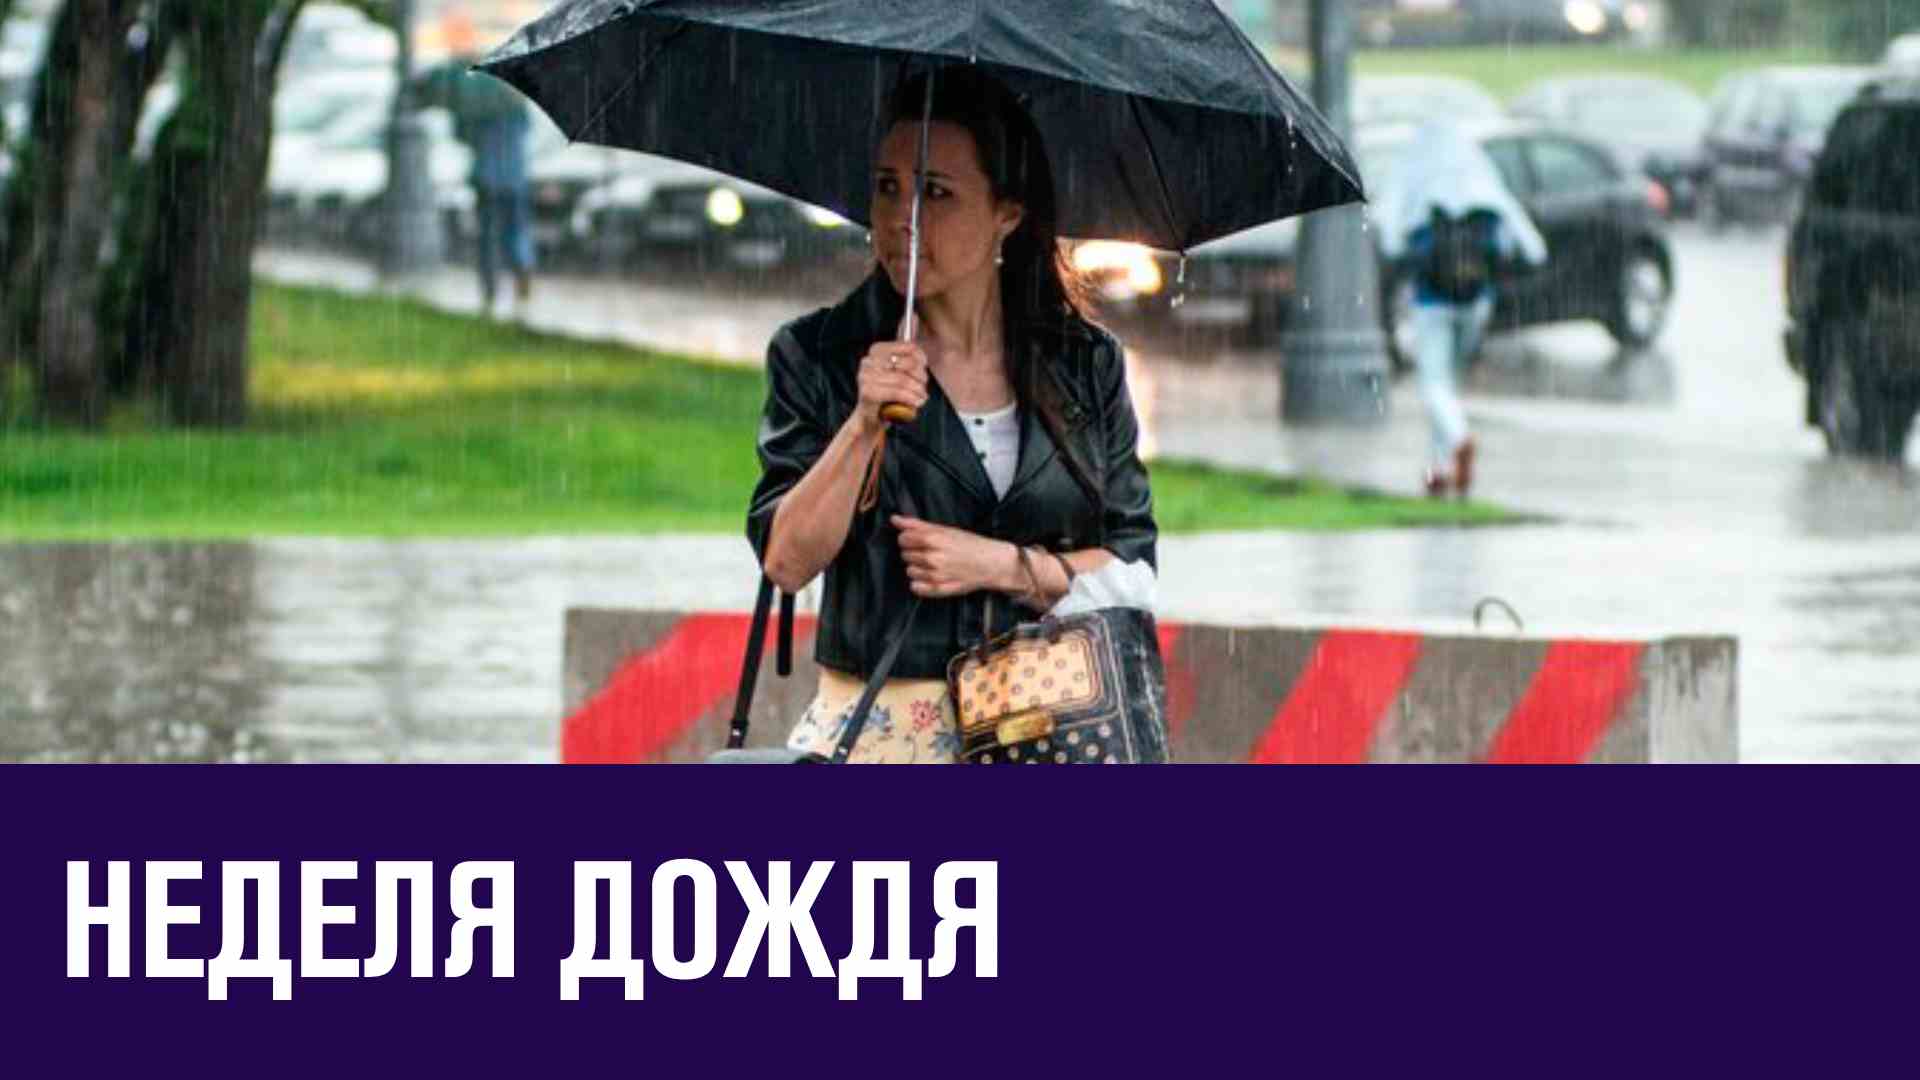 Москвичам предстоит дождливая неделя - Прогноз Погоды/Москва FM